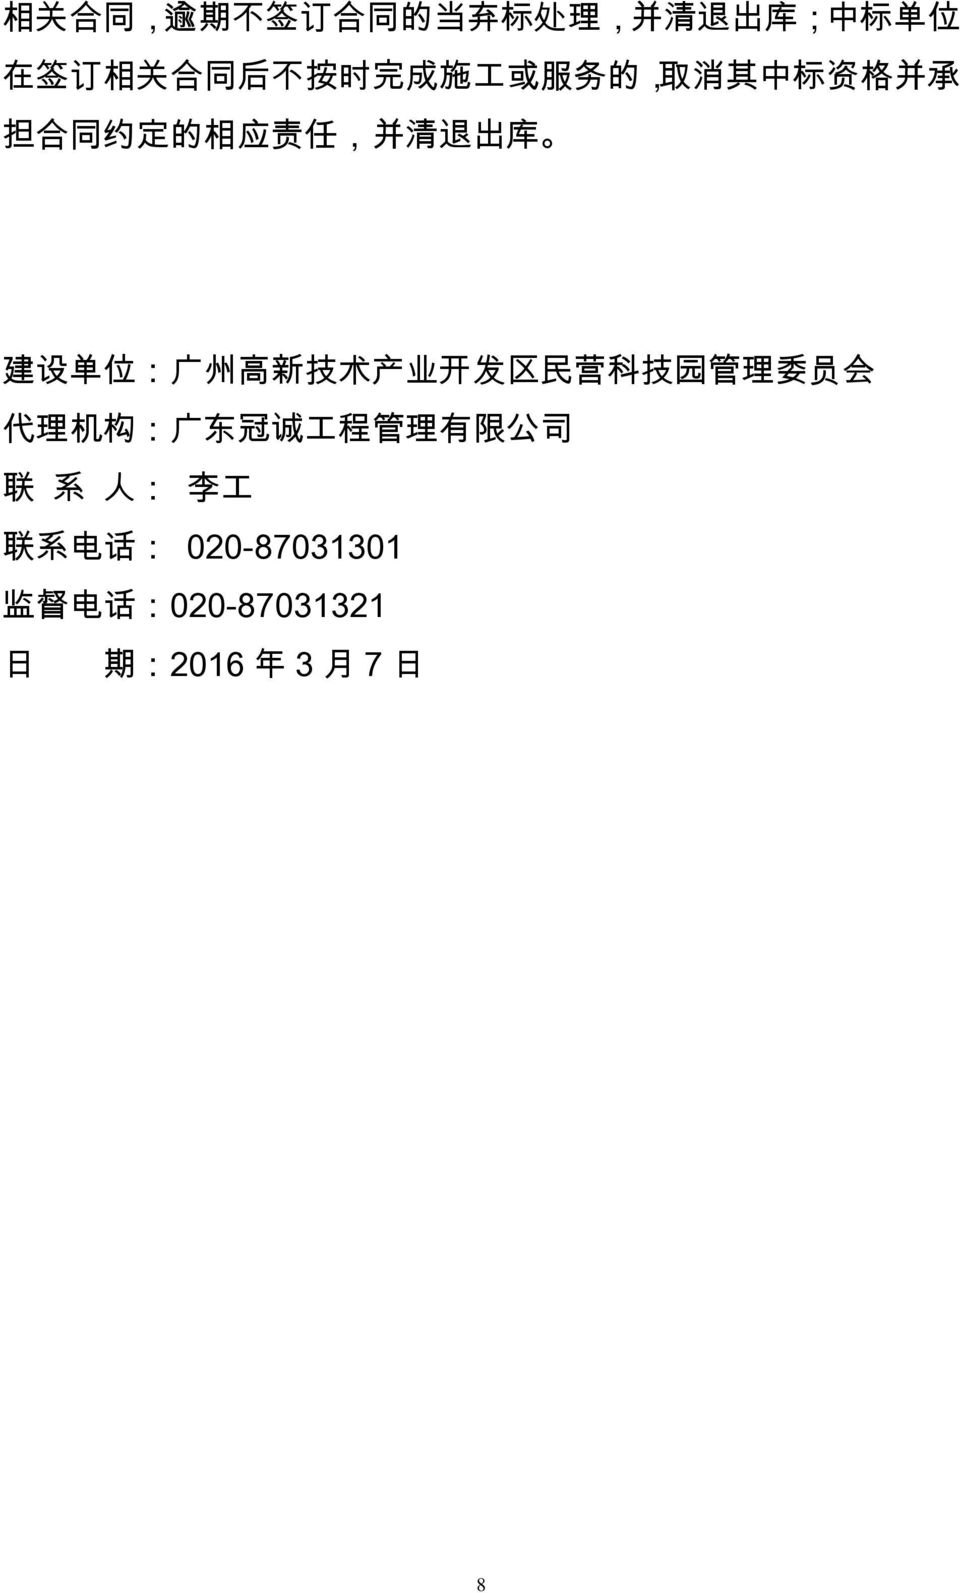 : 广 州 高 新 技 术 产 业 开 发 区 民 营 科 技 园 管 理 委 员 会 代 理 机 构 : 广 东 冠 诚 工 程 管 理 有 限 公